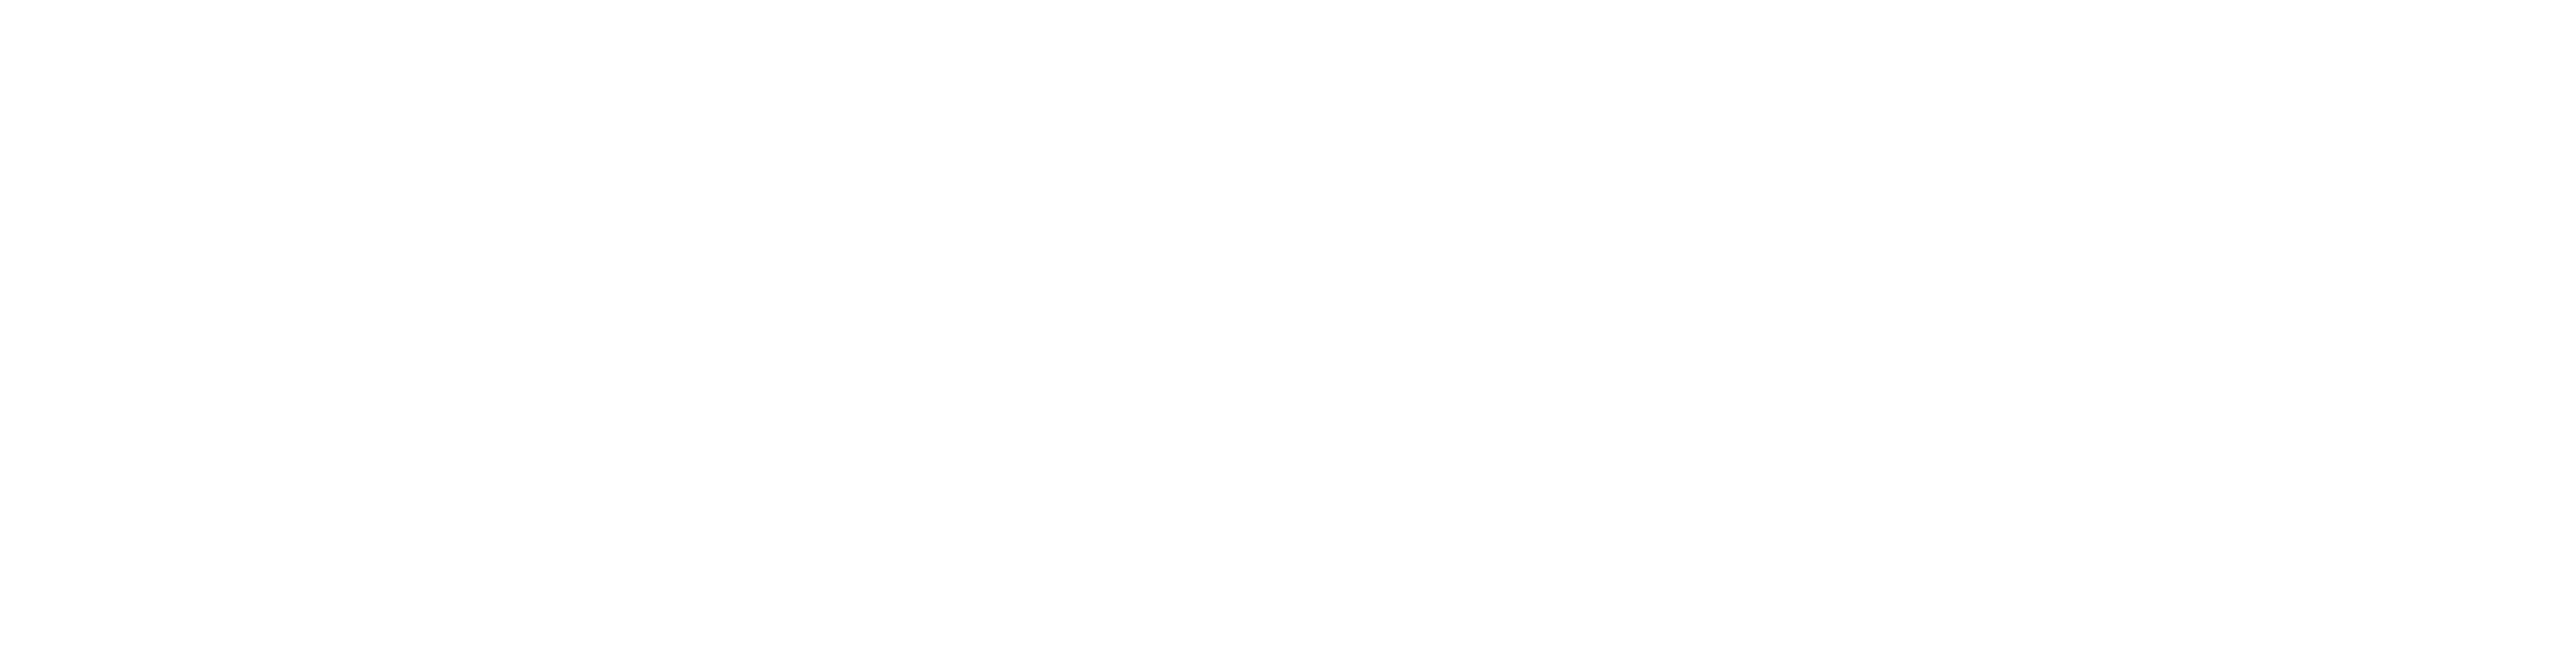 Allianz_logo_wht